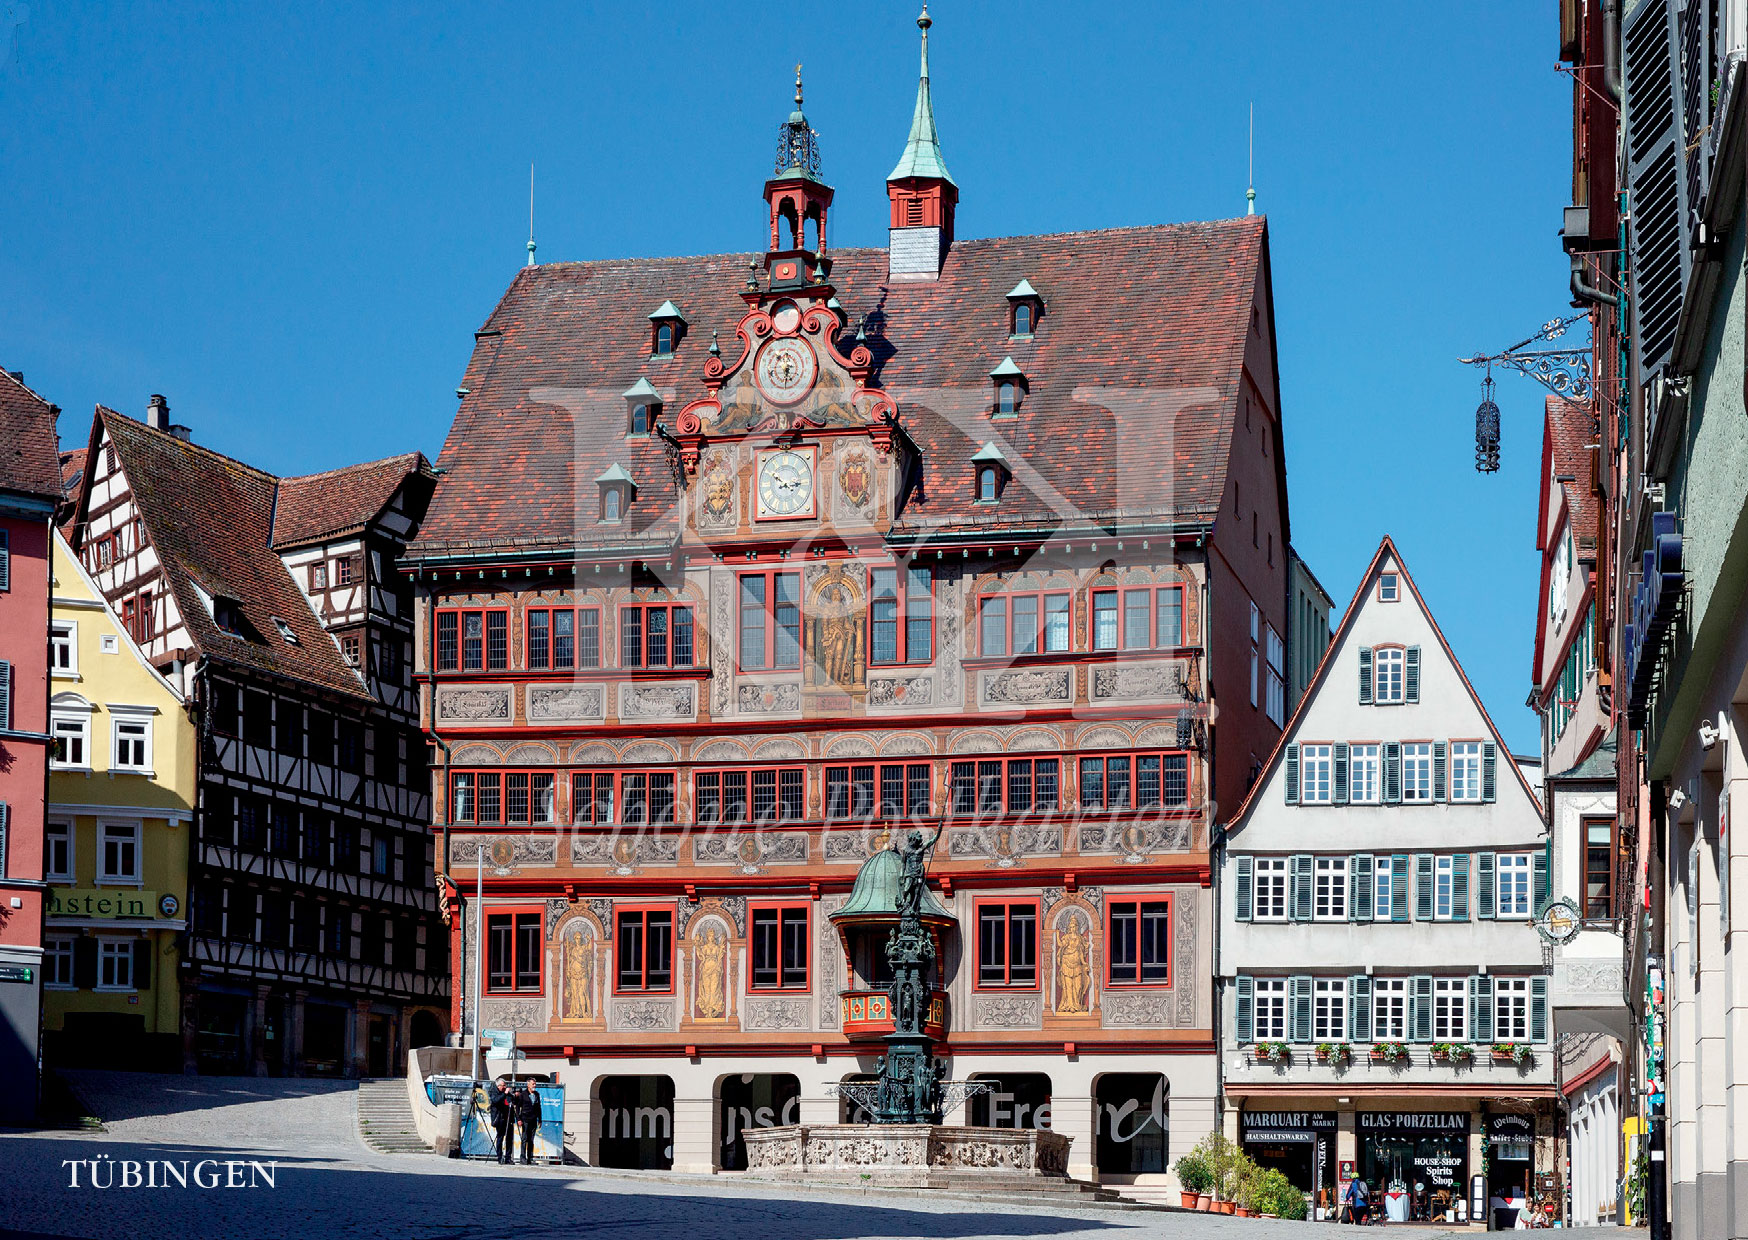 >>> NEU: Schöne Postkarte Nr. 81 · Rathaus Tübingen, ab 1435 gebaut und mehrfach erweitert und renoviert